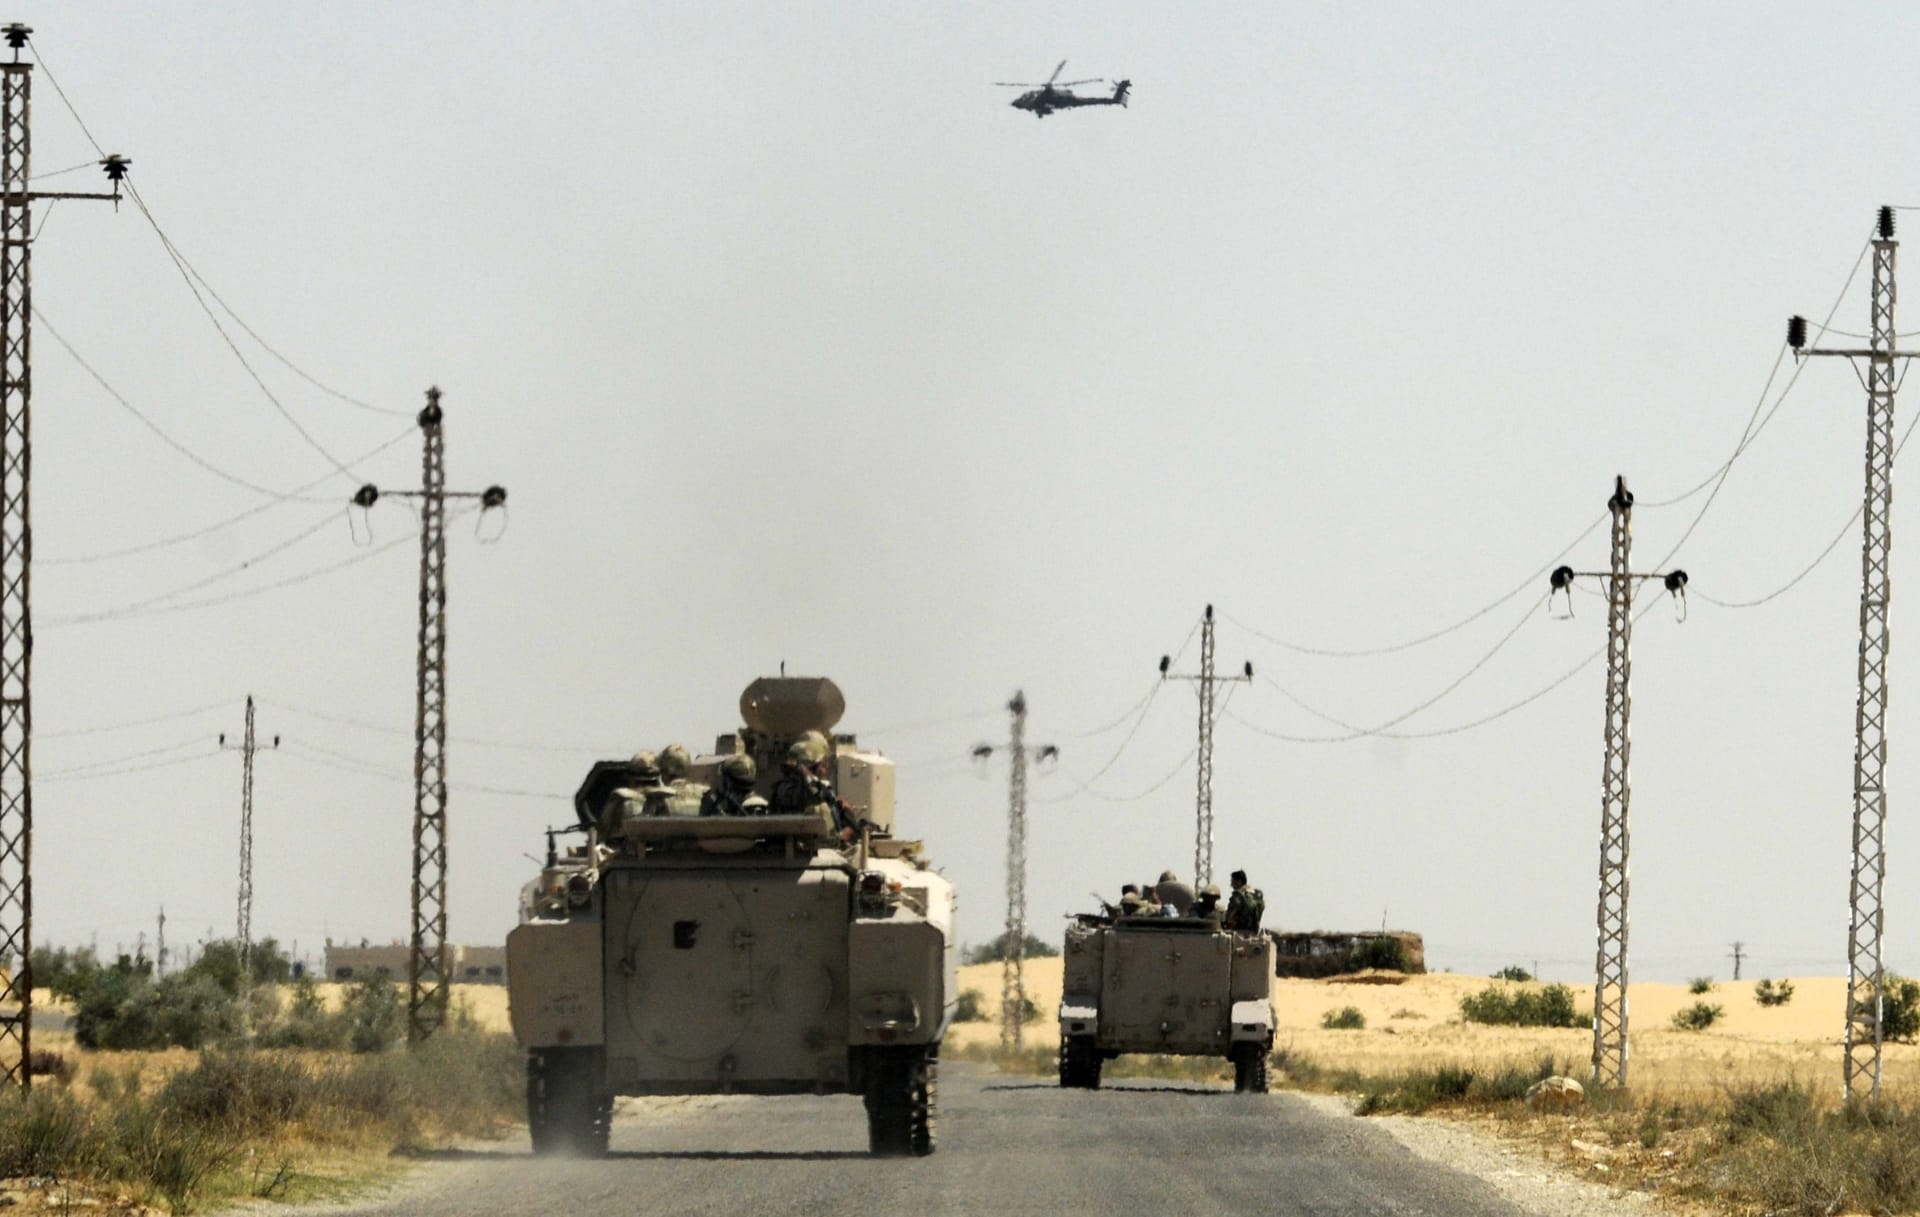 شبكتنا تكشف الخبر أولا: أمريكا تبحث سحب قواتها من سيناء خوفا من تهديد "داعش"